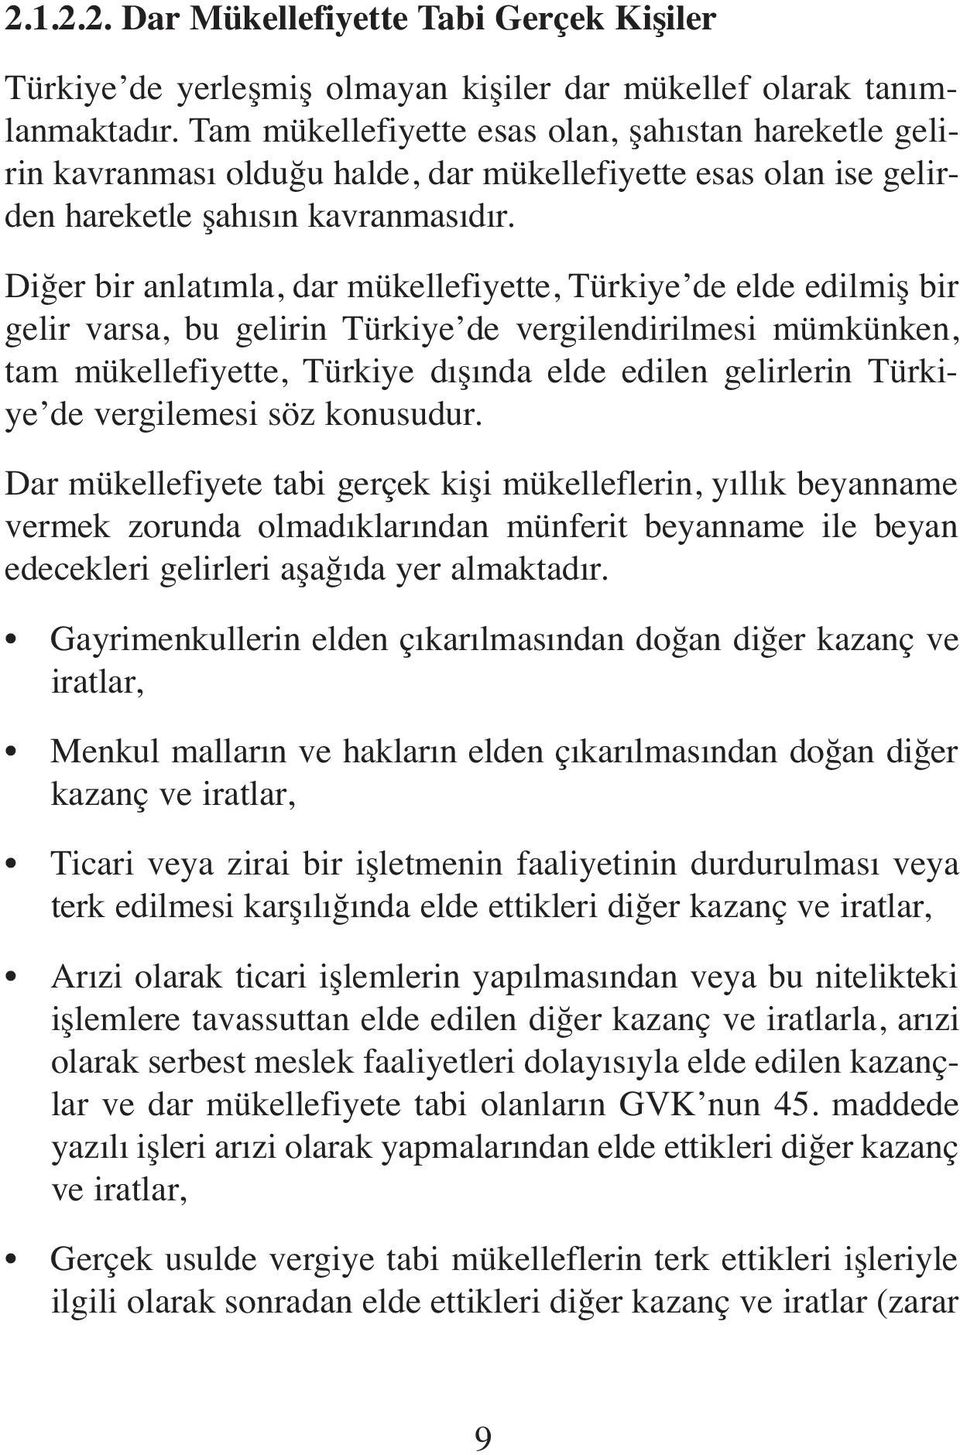 Diğer bir anlatımla, dar mükellefiyette, Türkiye de elde edilmiş bir gelir varsa, bu gelirin Türkiye de vergilendirilmesi mümkünken, tam mükellefiyette, Türkiye dışında elde edilen gelirlerin Türkiye